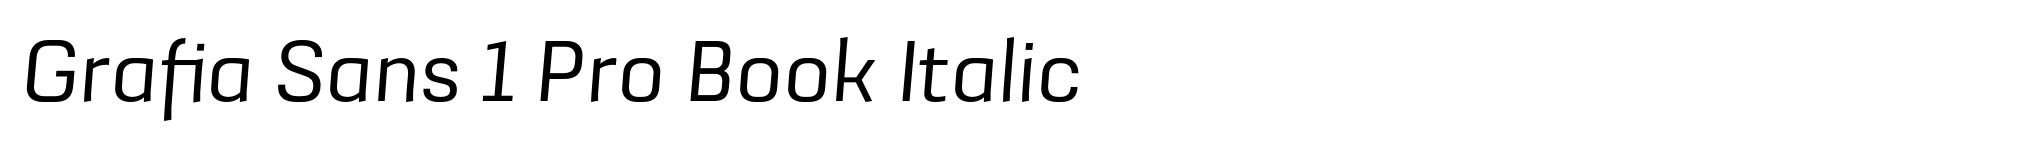 Grafia Sans 1 Pro Book Italic image